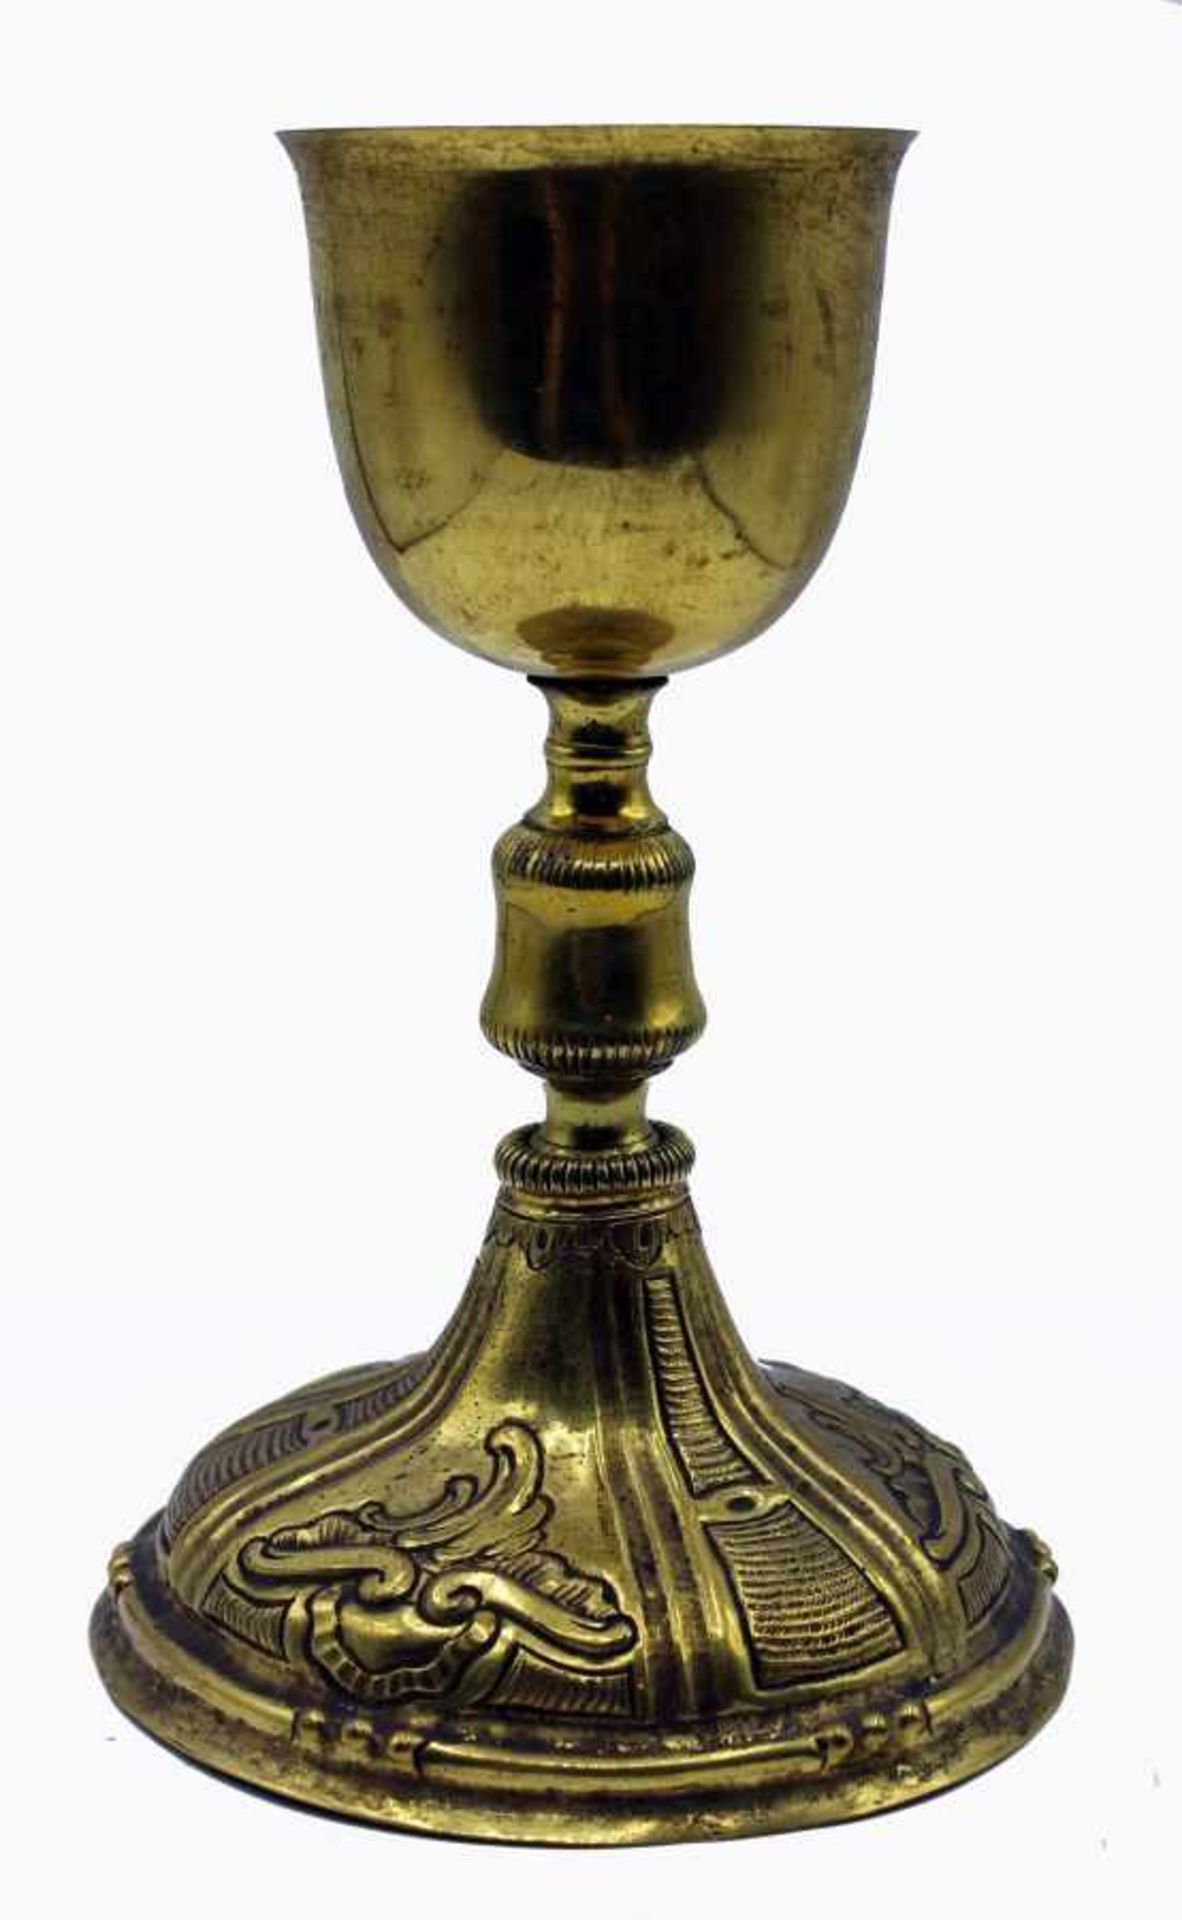 Meßkelch - wohl süddeutsch 18.Jahrhundert Messing, teilweise vergoldet, verziert mit Rocaillen und